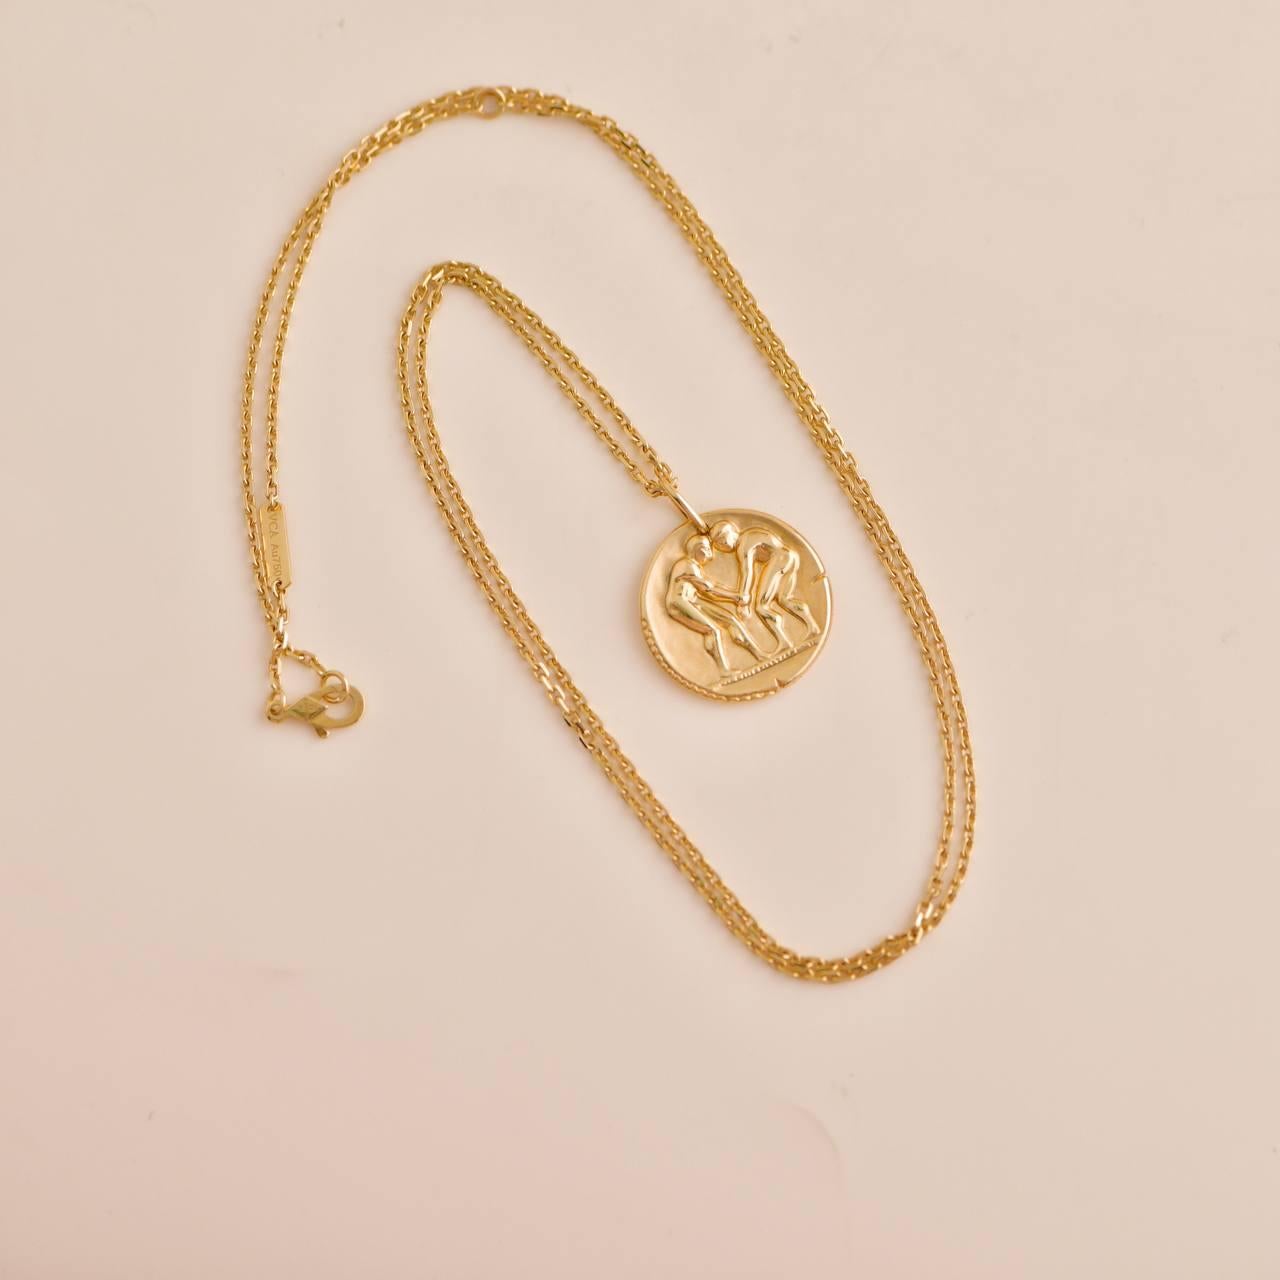 Women's or Men's Van Cleef & Arpels Zodiaque Medal Geminorum Yellow Gold Pendant Necklace For Sale